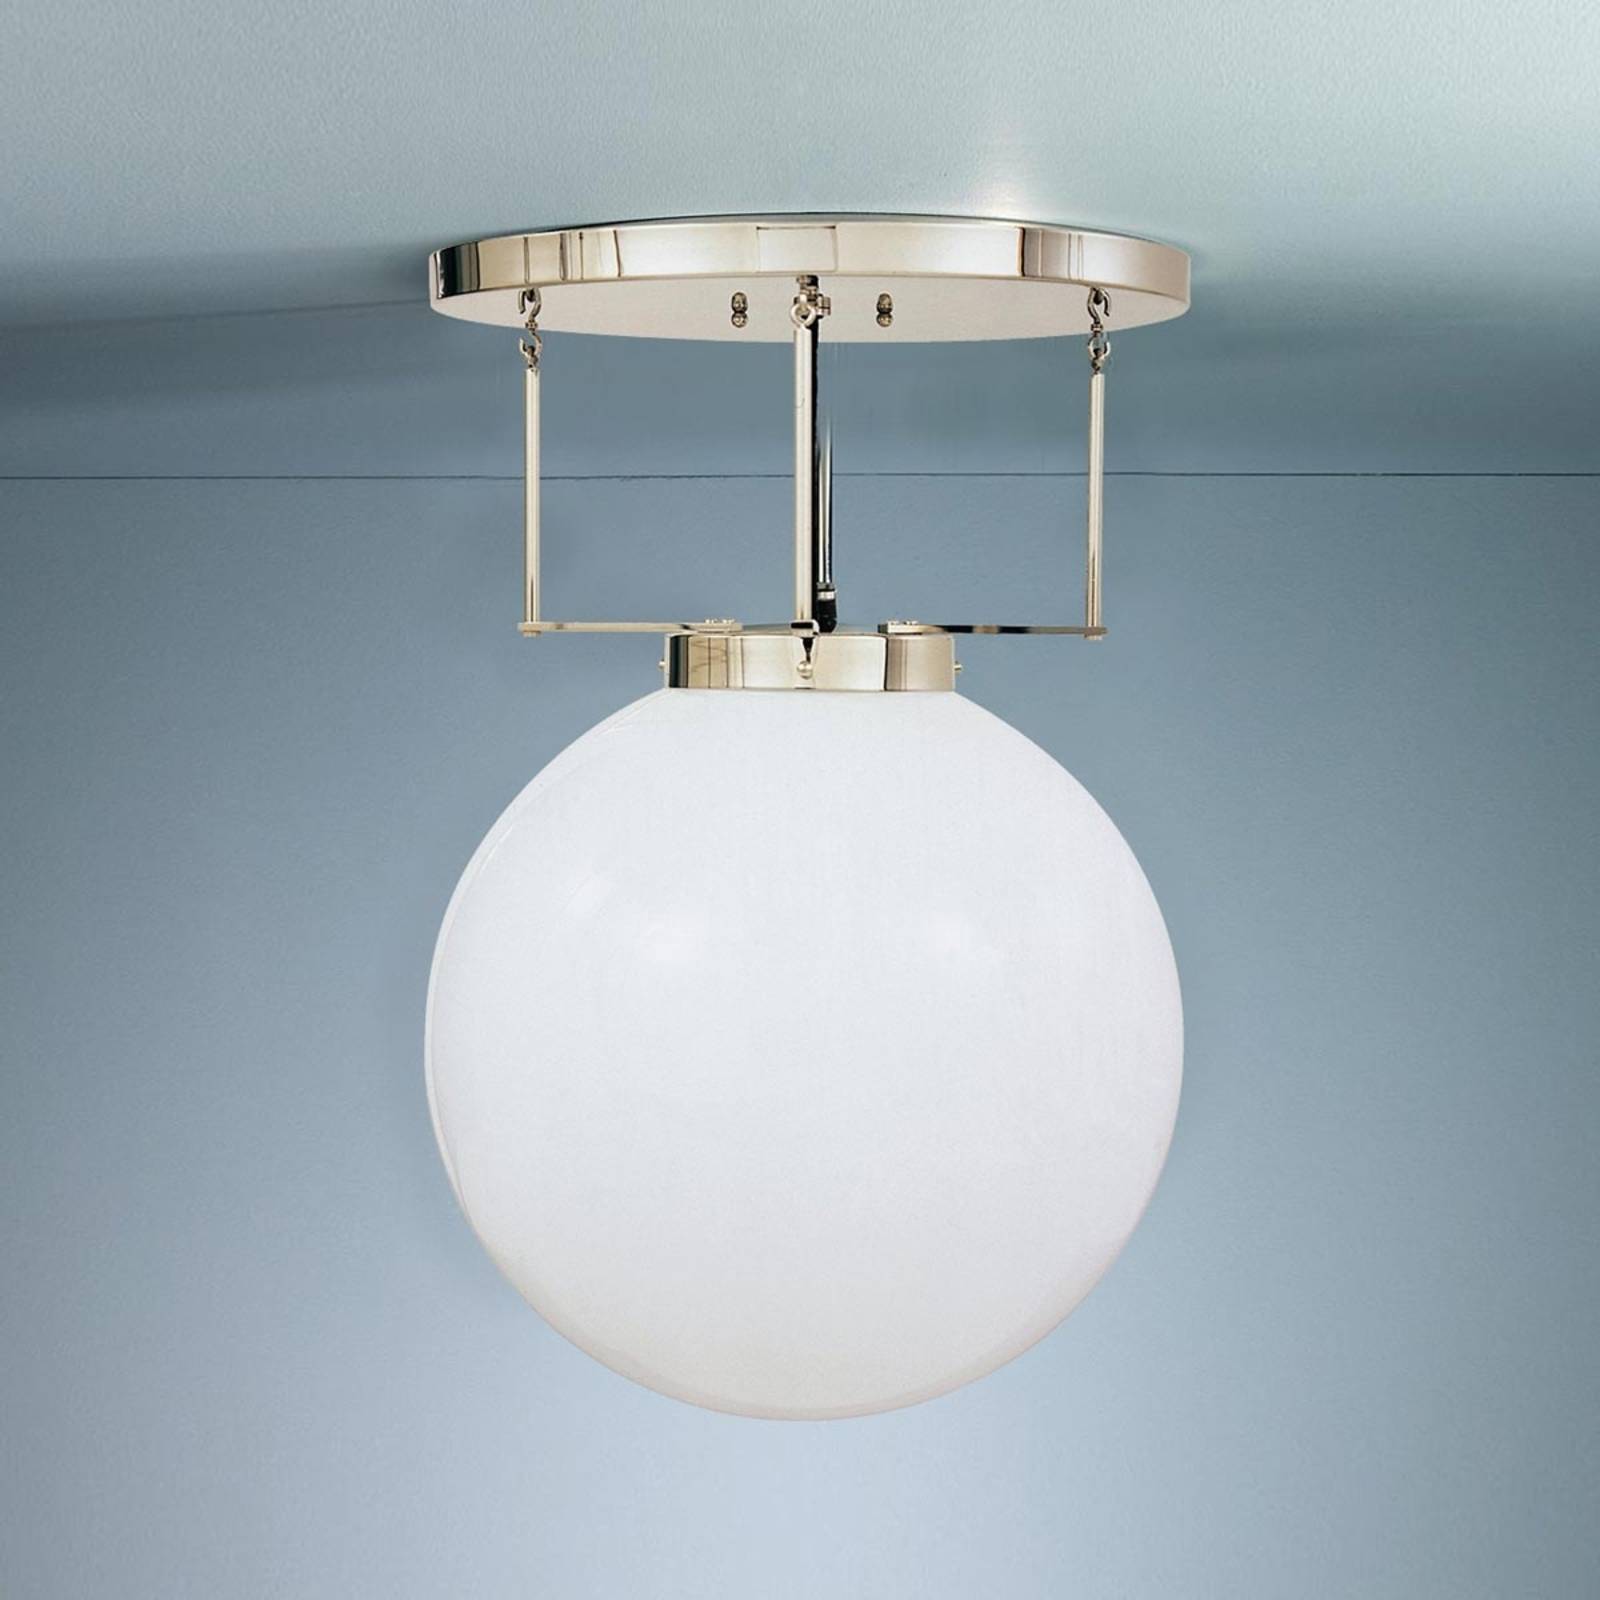 Lampa sufitowa w stylu Bauhaus 30 cm